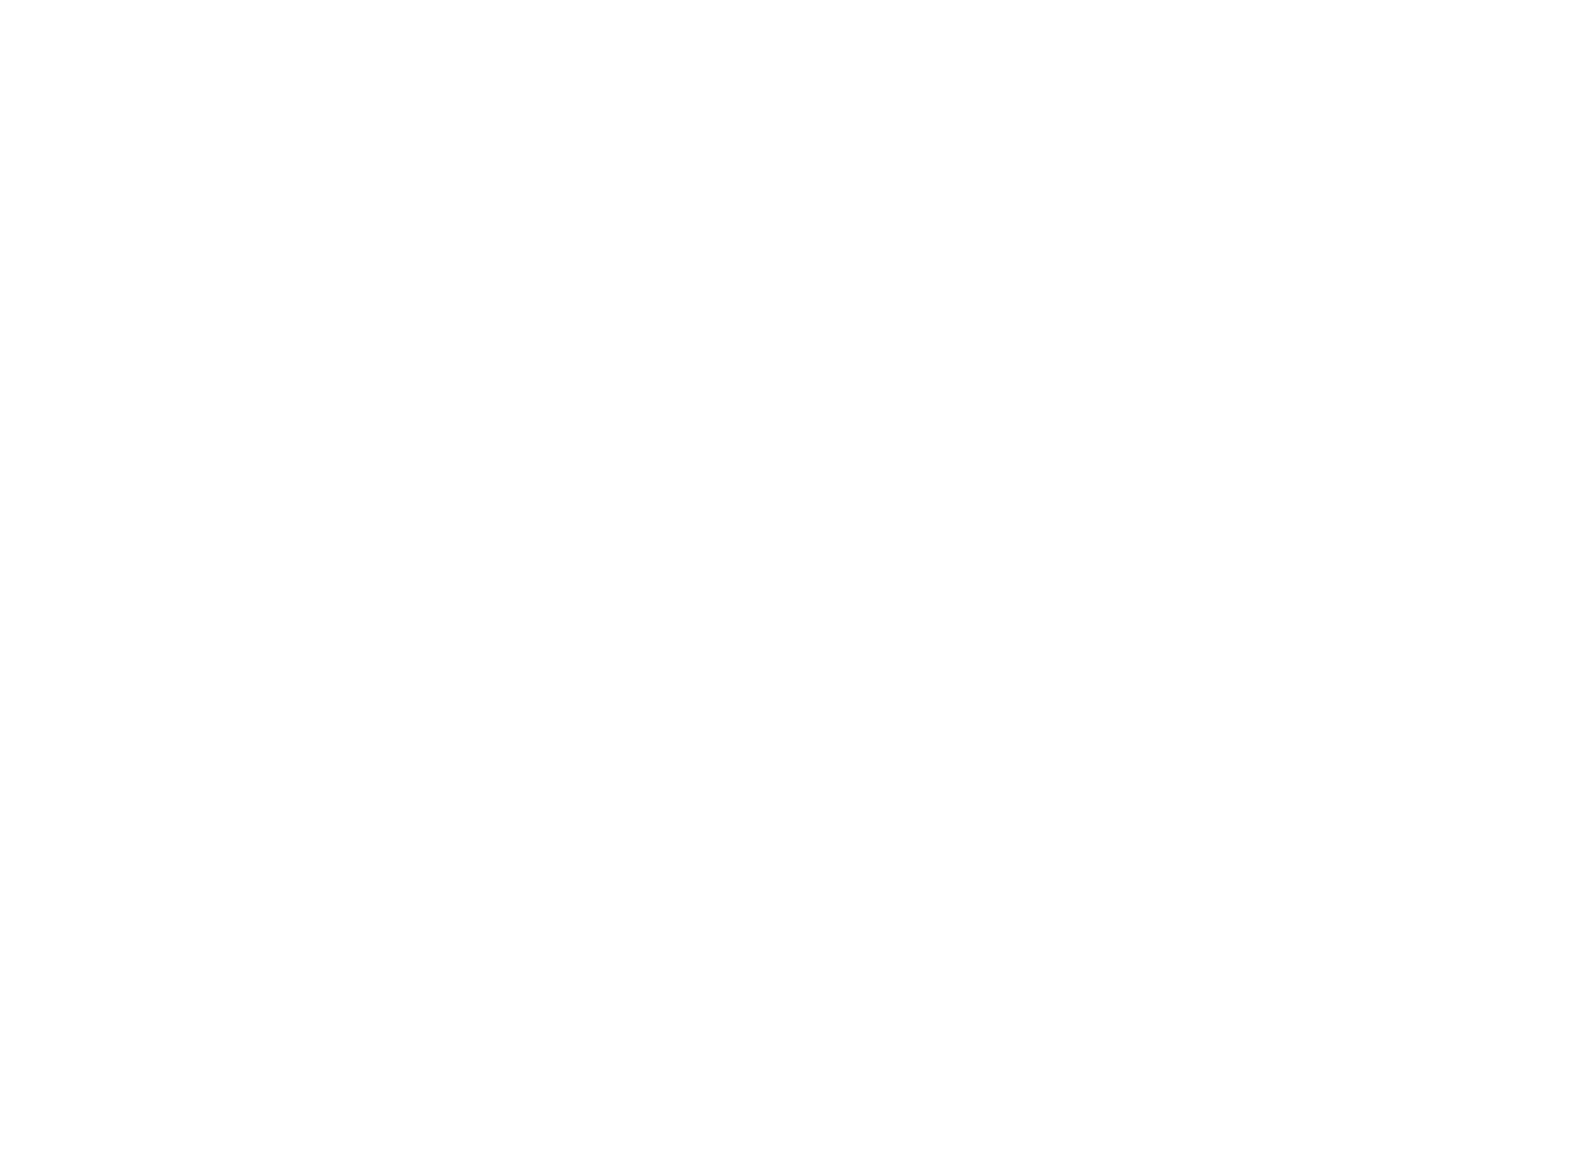 bEckyard - merchandise